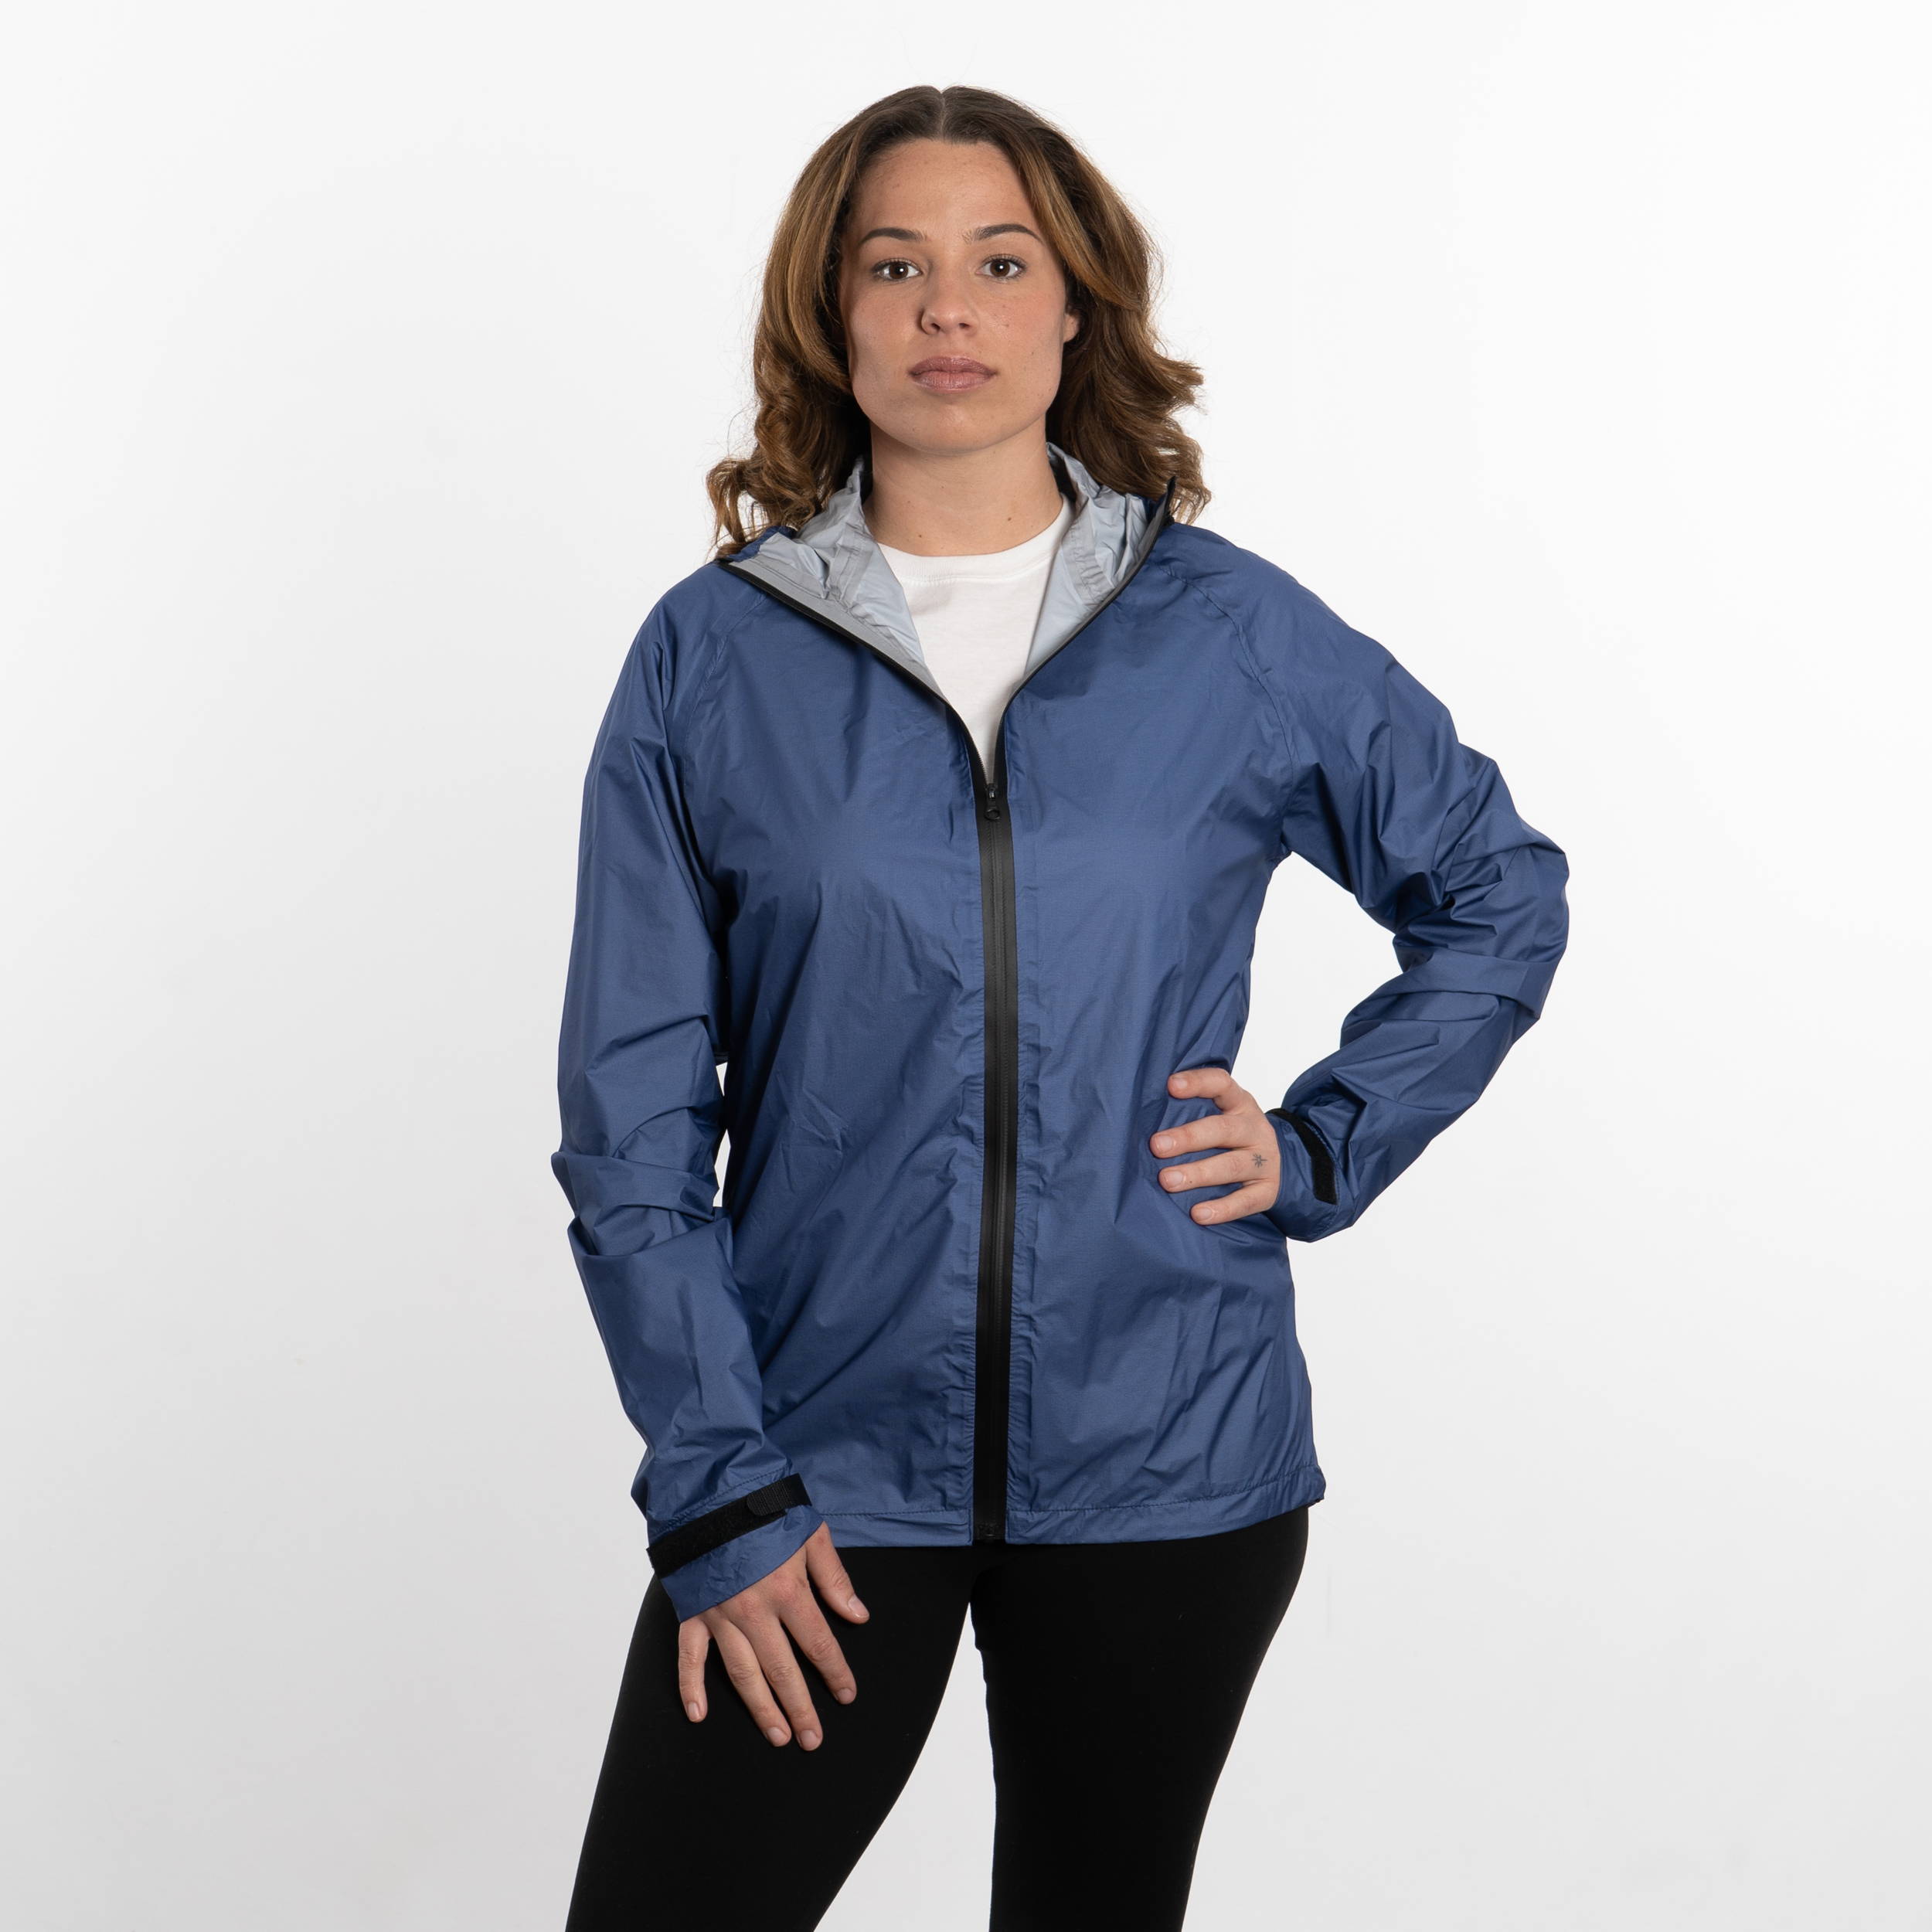 Women's Visp Rain Jacket - Enlightened Equipment